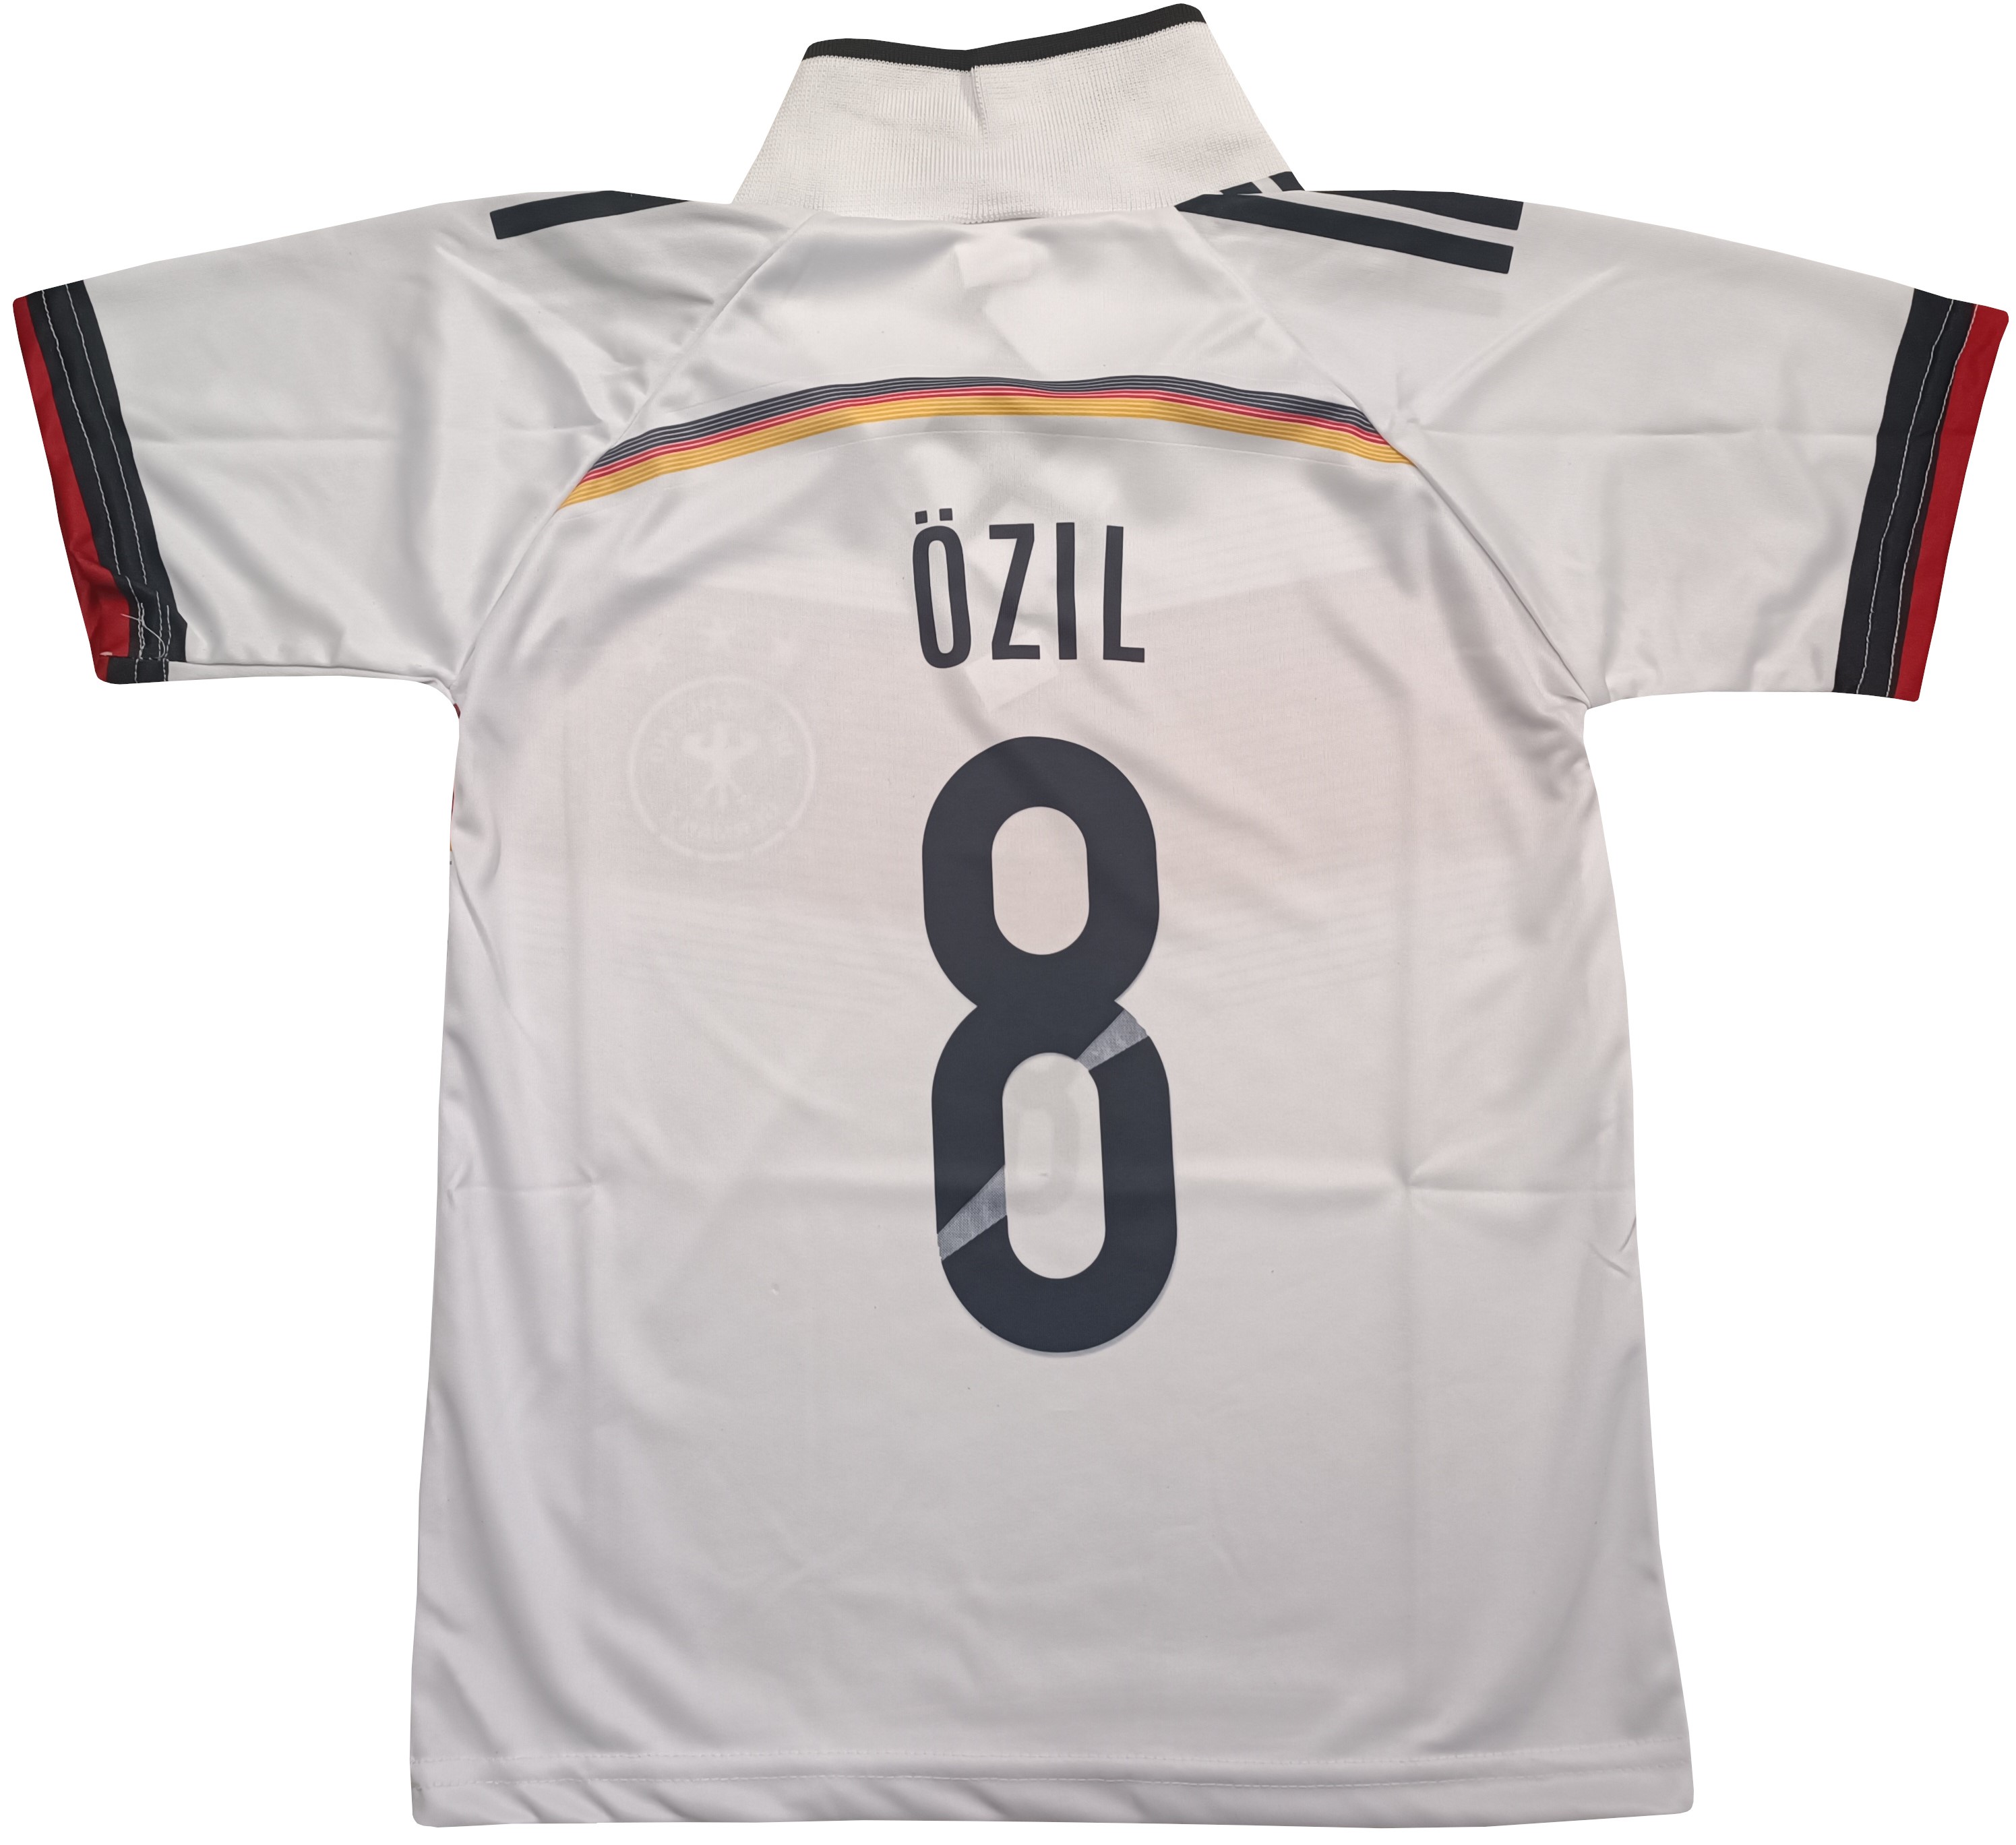 Fotbalový dres Ozil 8 Německo - výprodej Velikost: 128 cm (4-6 let) povánoční sleva